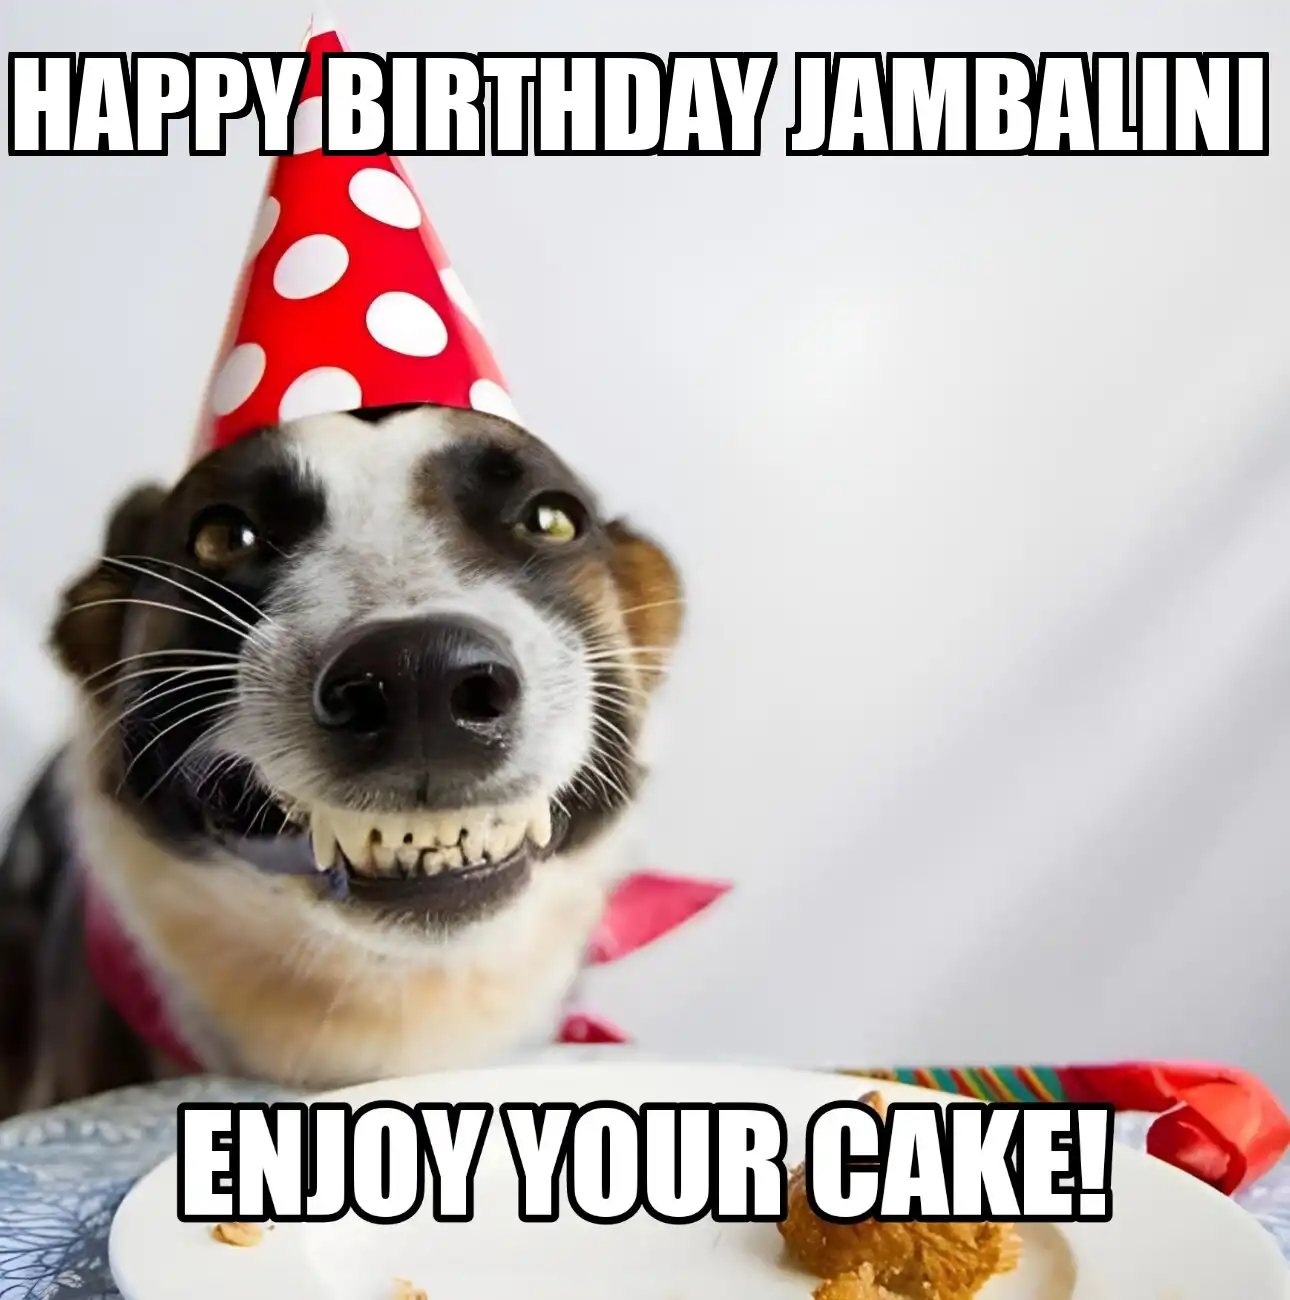 Happy Birthday Jambalini Enjoy Your Cake Dog Meme